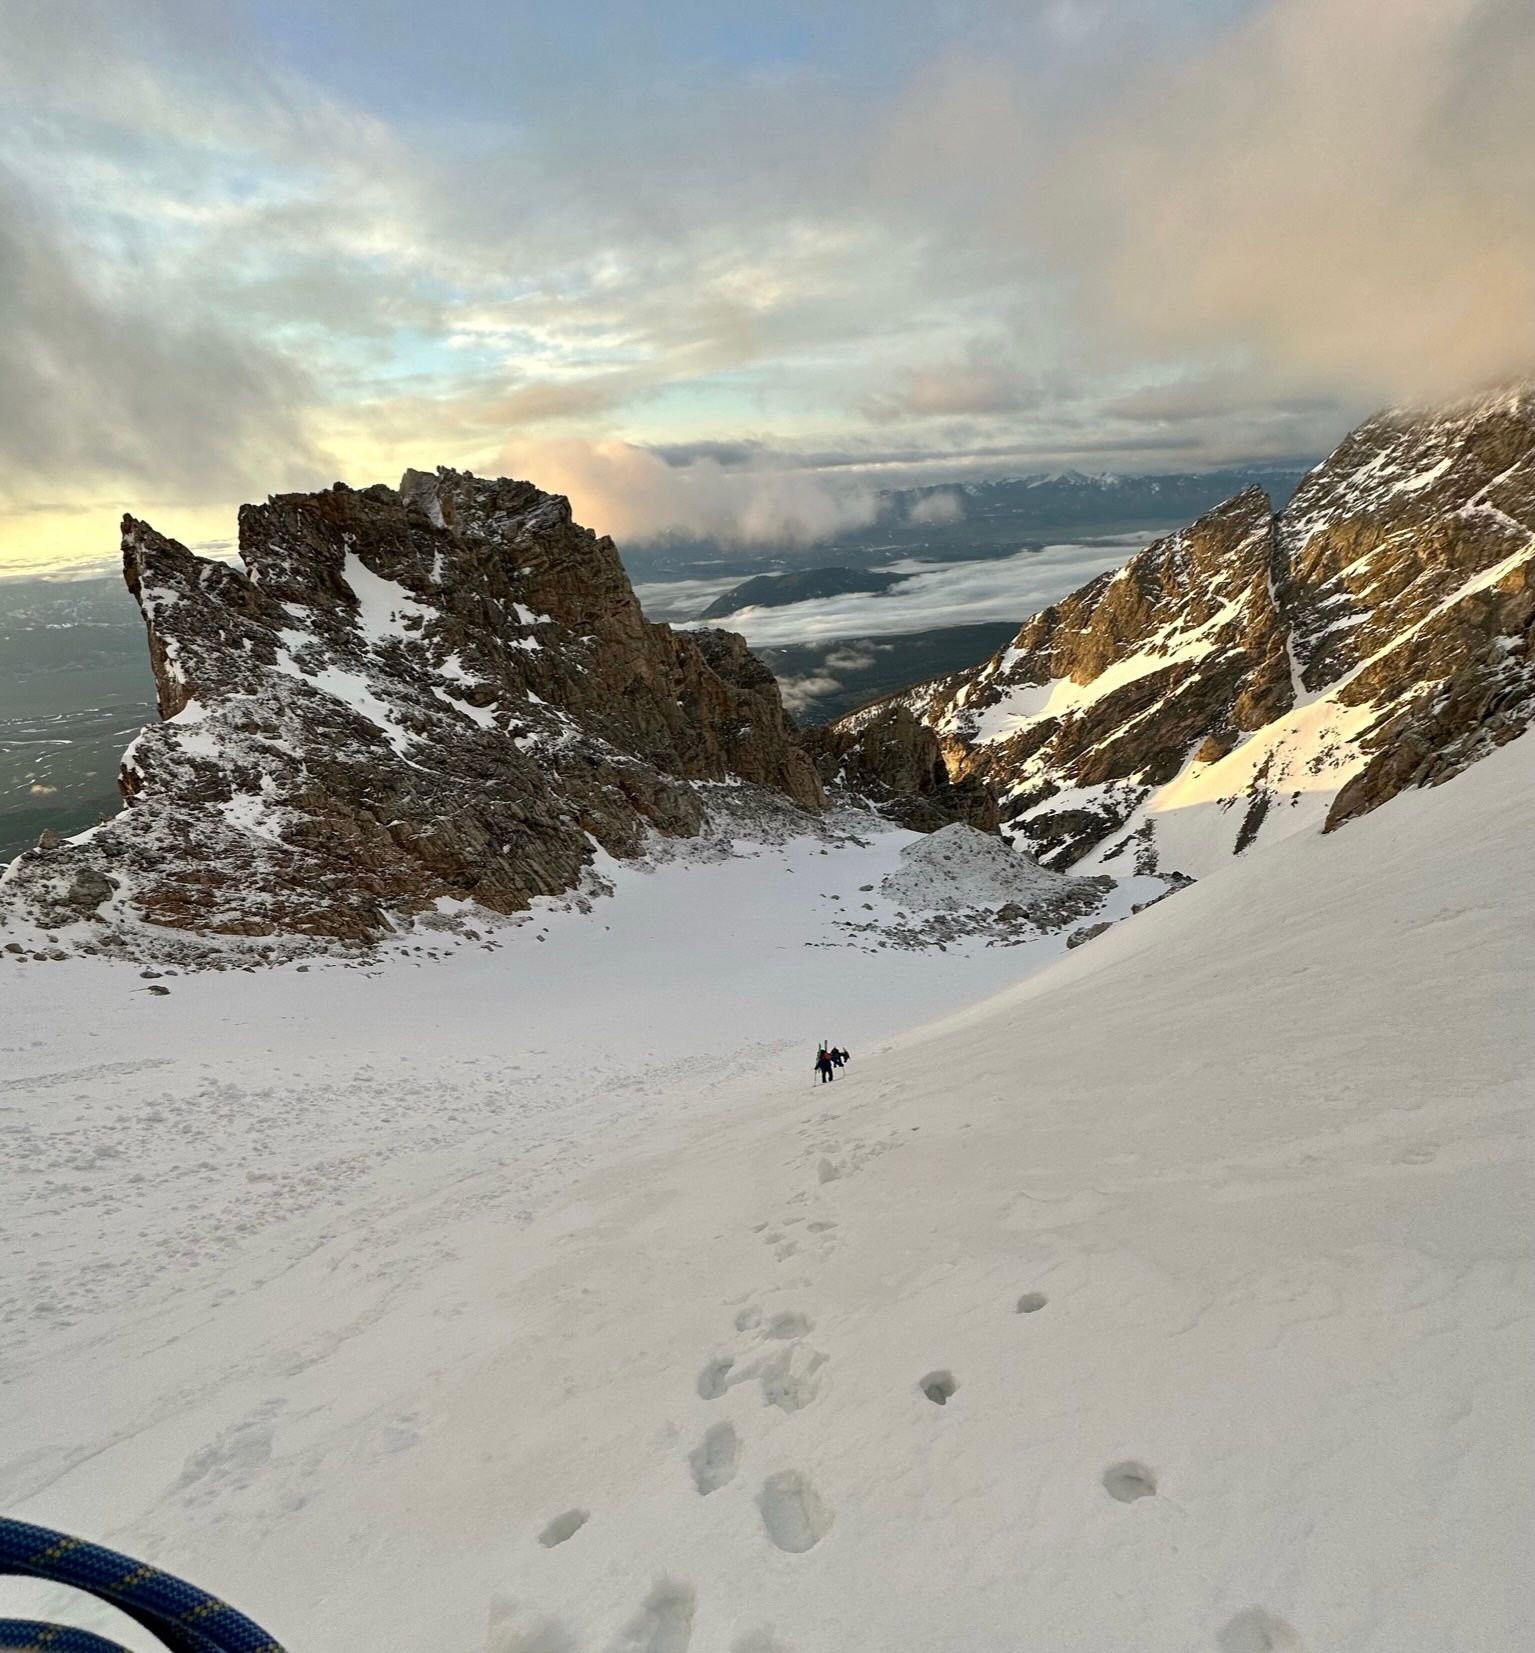 Grand Teton Ski Descent via Ford Stettner